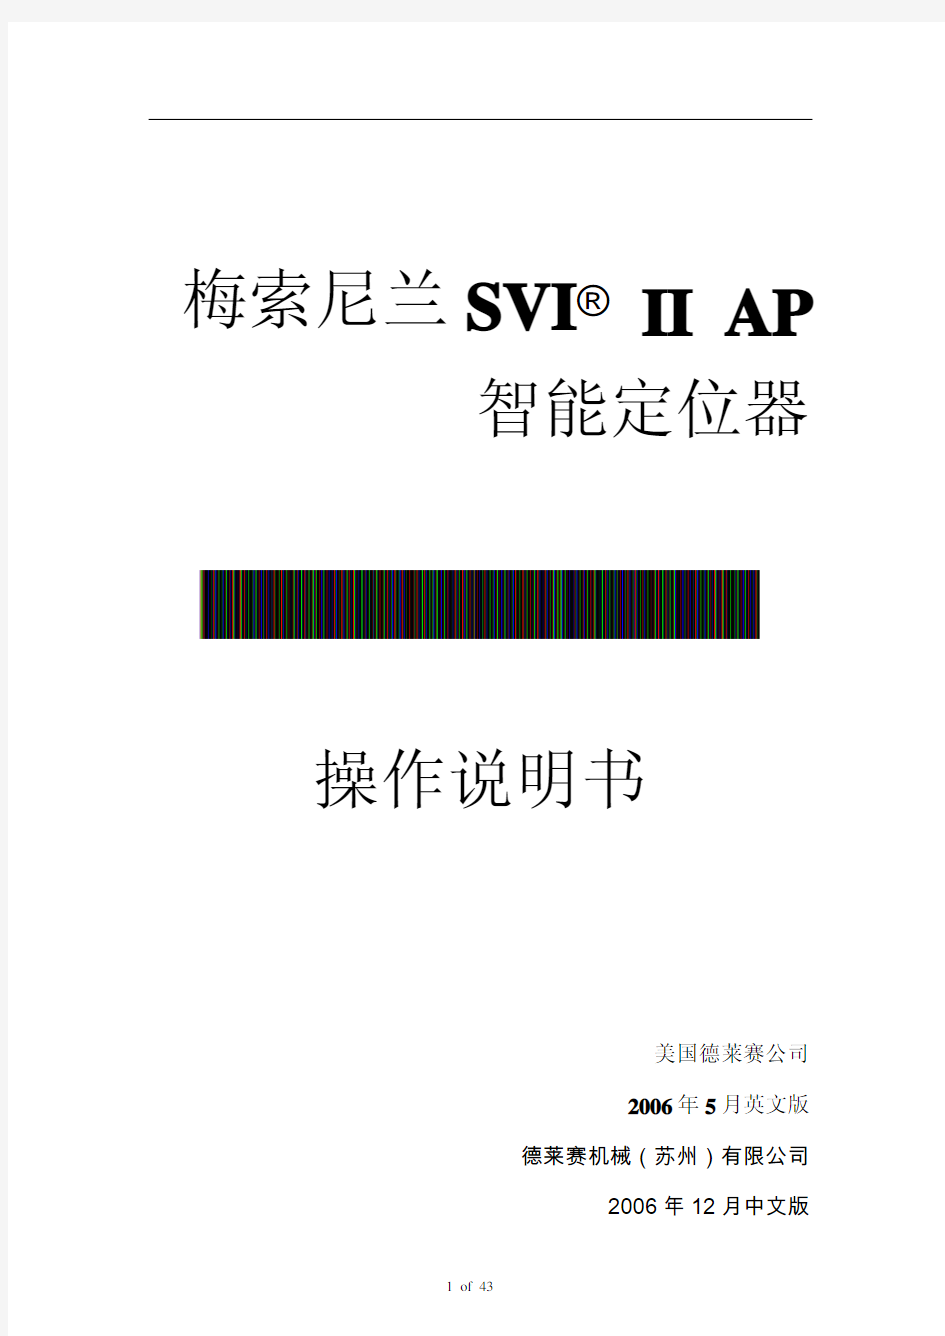 梅索尼兰 SVI  II AP 智能定位器中文操作手册